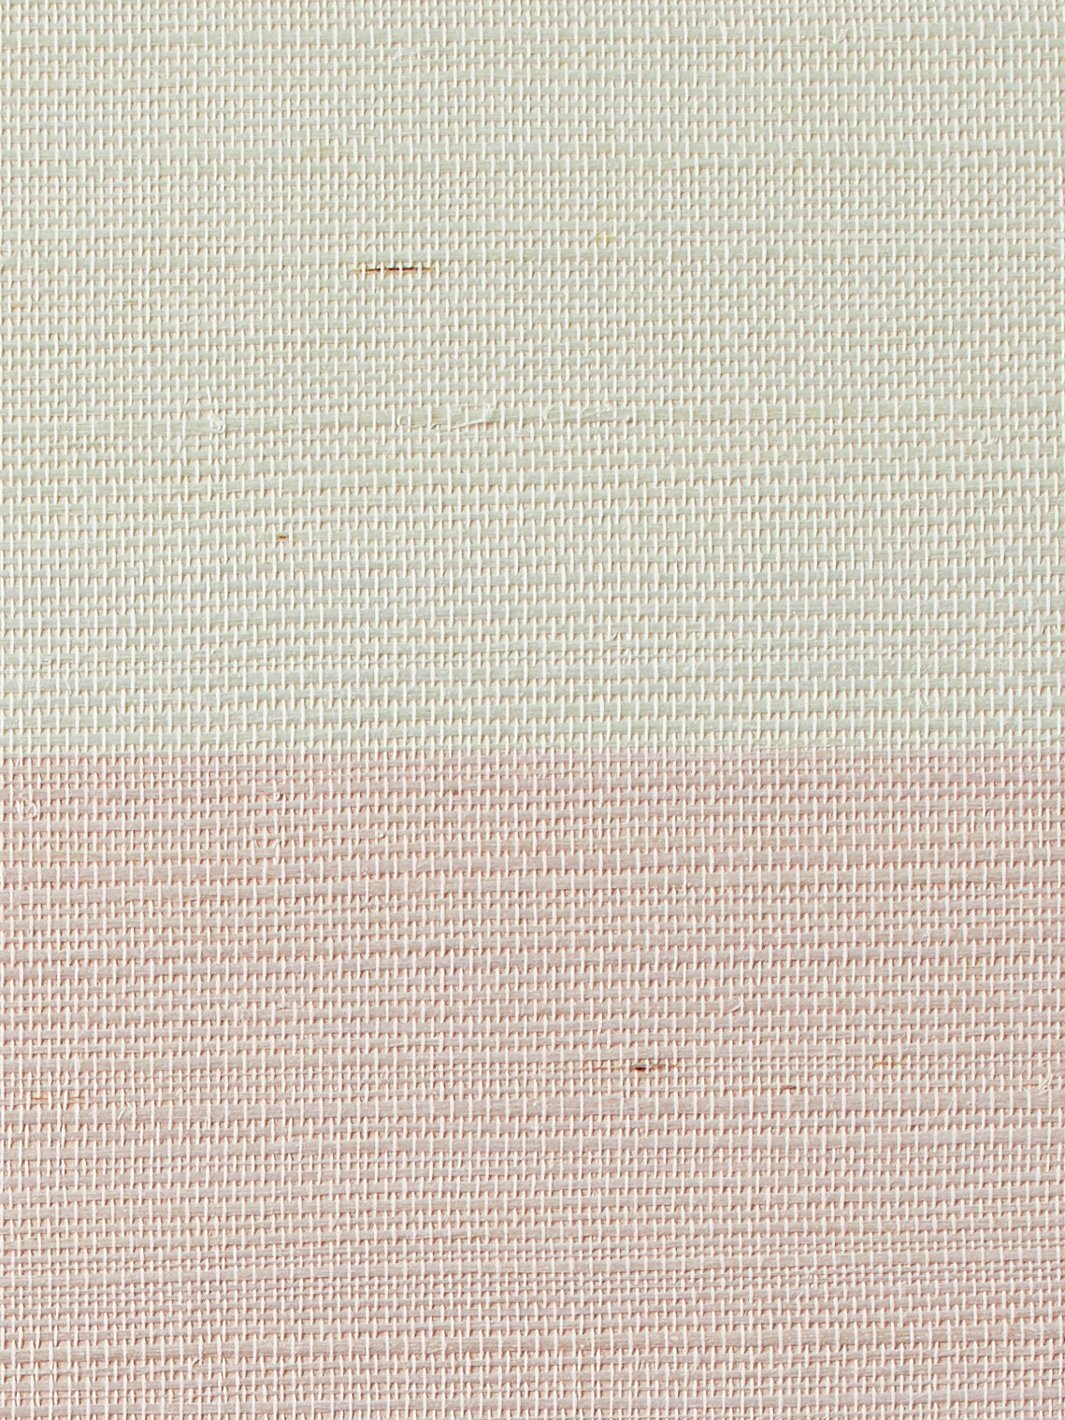 'Wide Stripe' Grasscloth' Wallpaper by Wallshoppe - Ballet Slipper